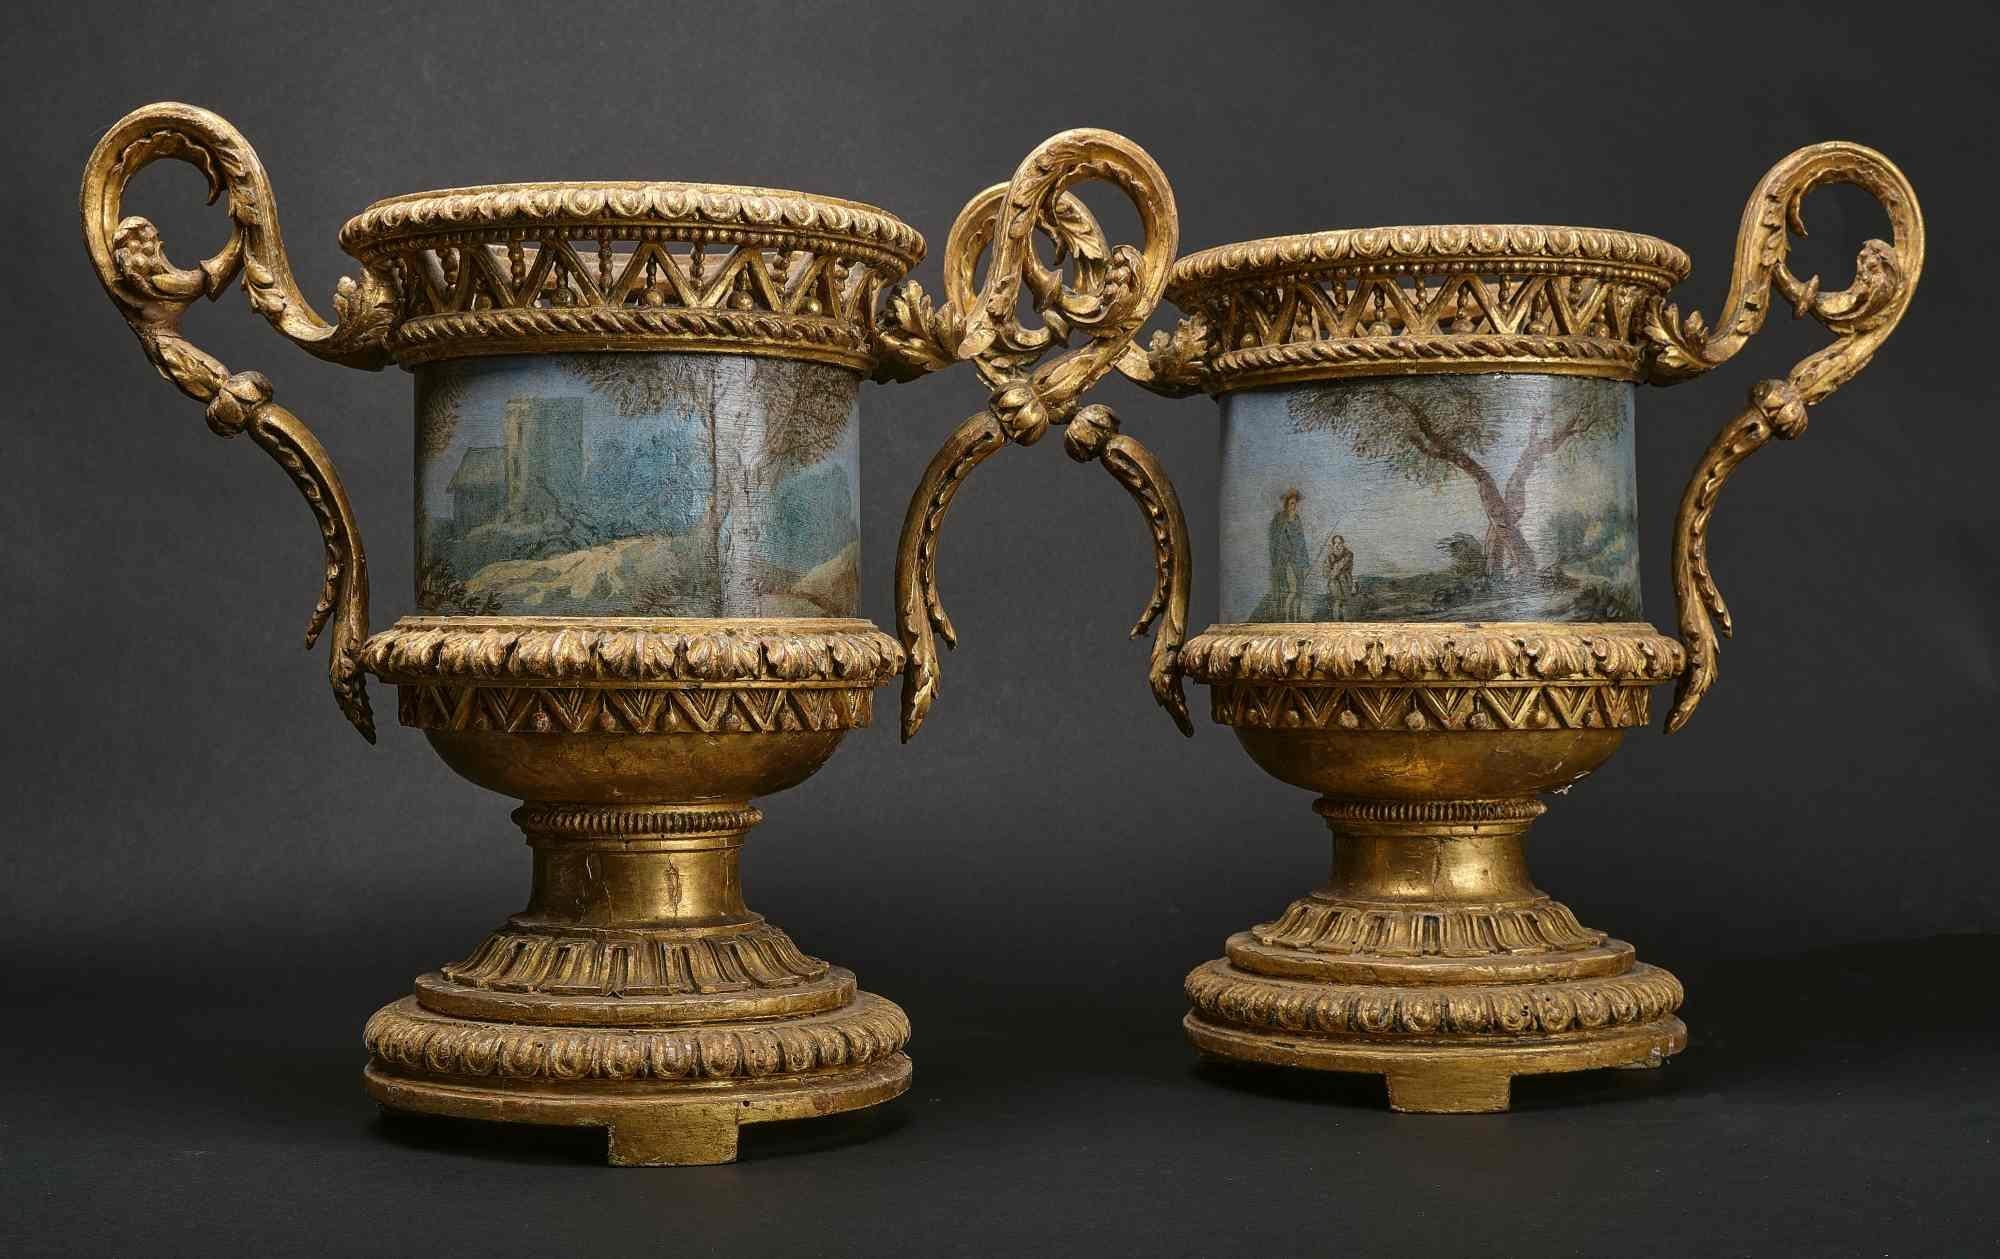 Cette paire de vases romains de la période Louis-XVI est extrêmement rare. La virtuosité de la sculpture suit avec tous les éléments le style Louis XVI. La dorure n'est jamais touchée. Les pots de fleurs en tôle peinte sont décorés de paysages